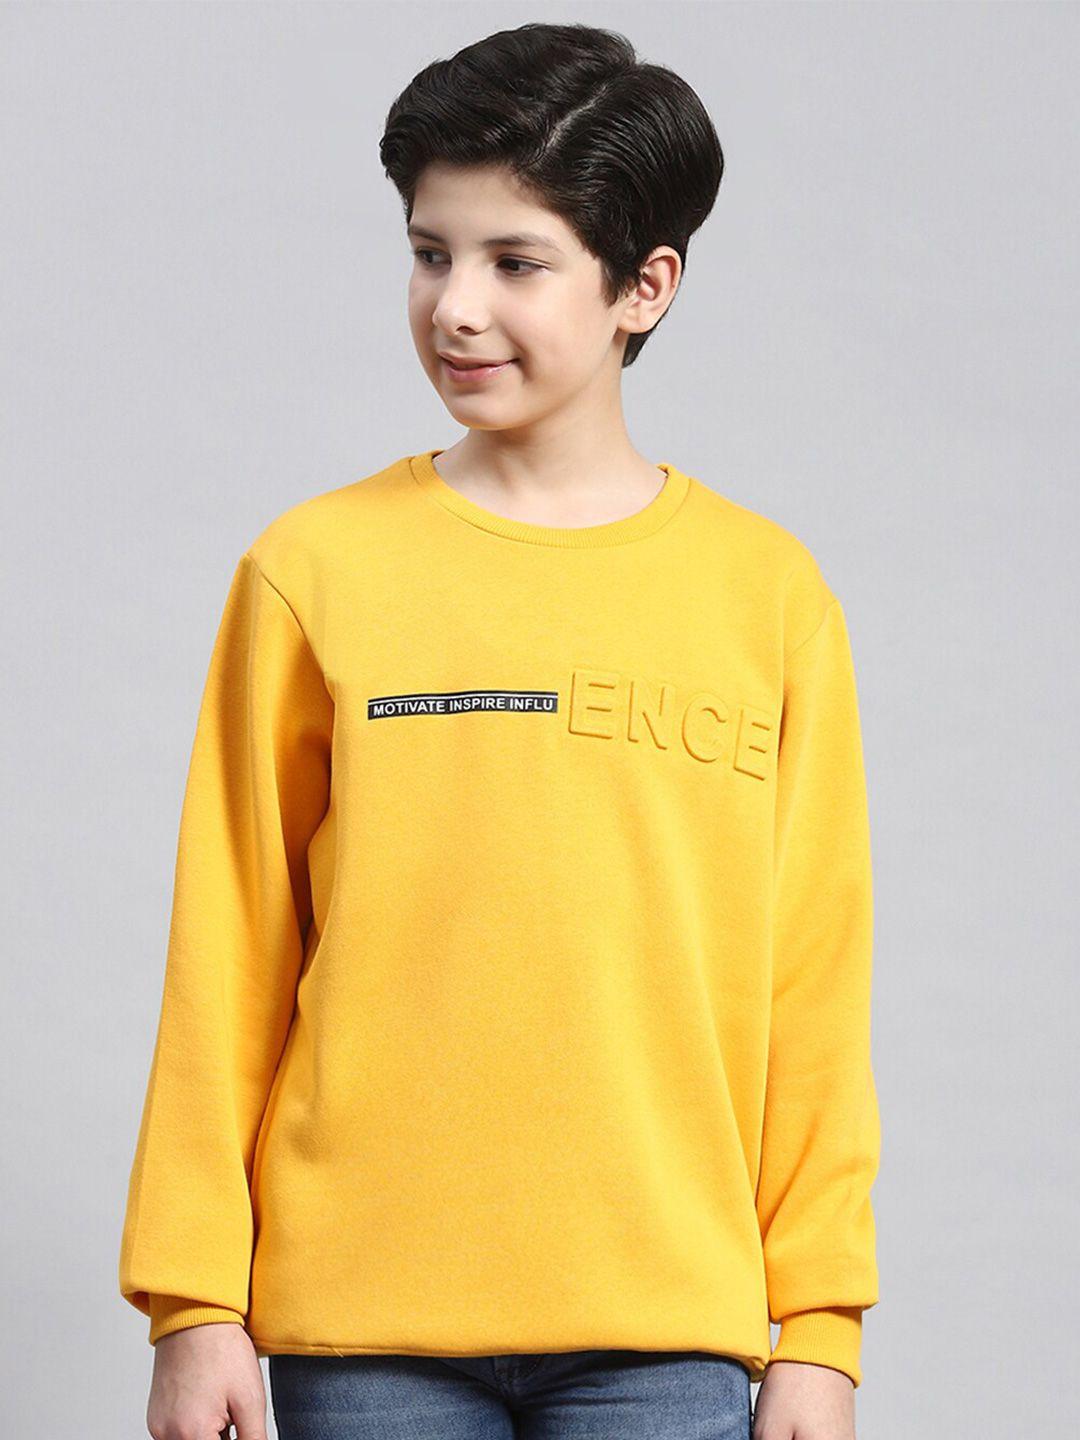 monte-carlo-boys-typography-printed-cotton-pullover-sweatshirt